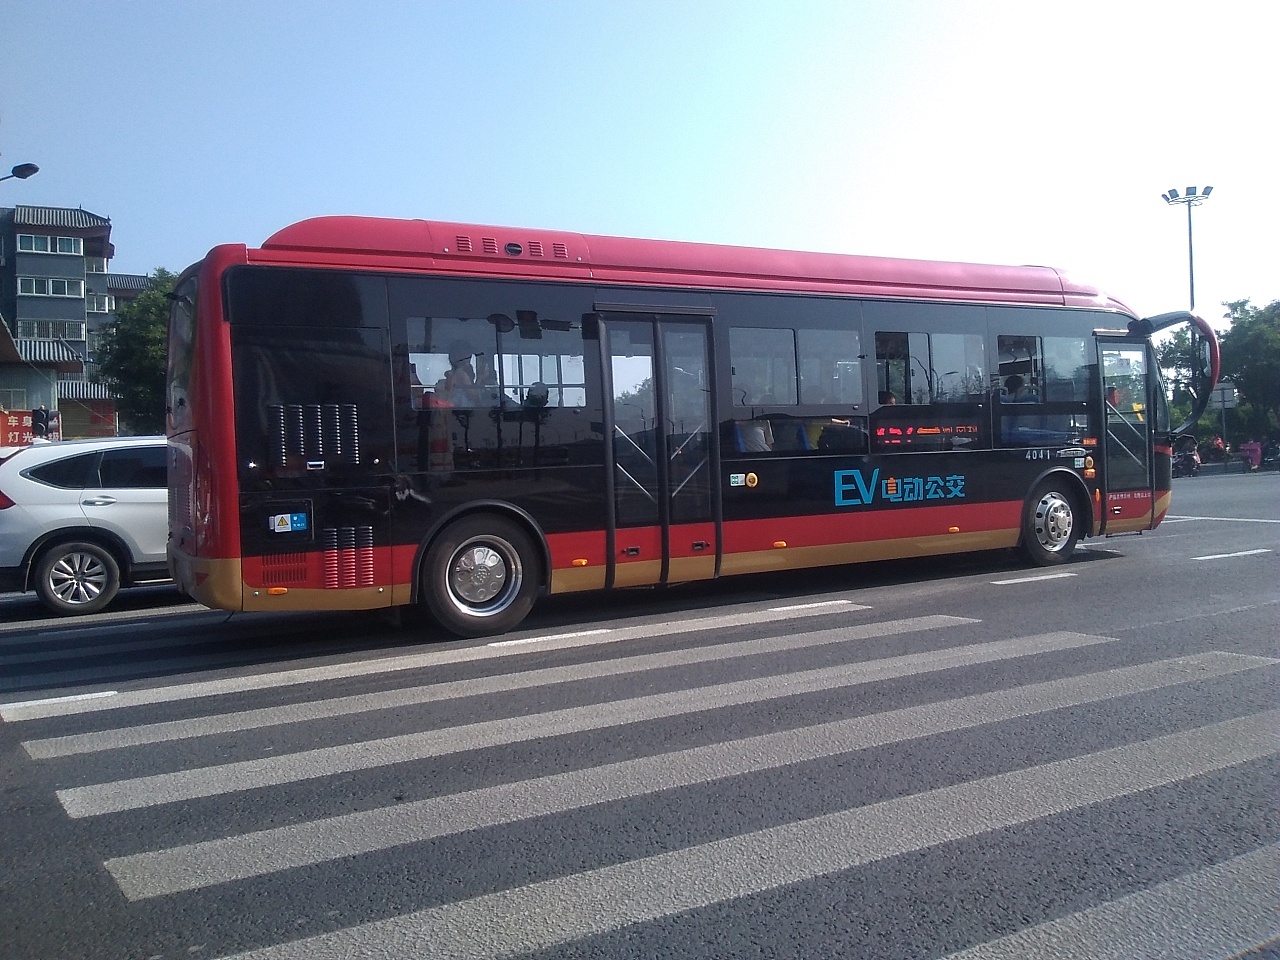 广东省将大力推展新能源车 公共交通即将进入全面电动化-新出行